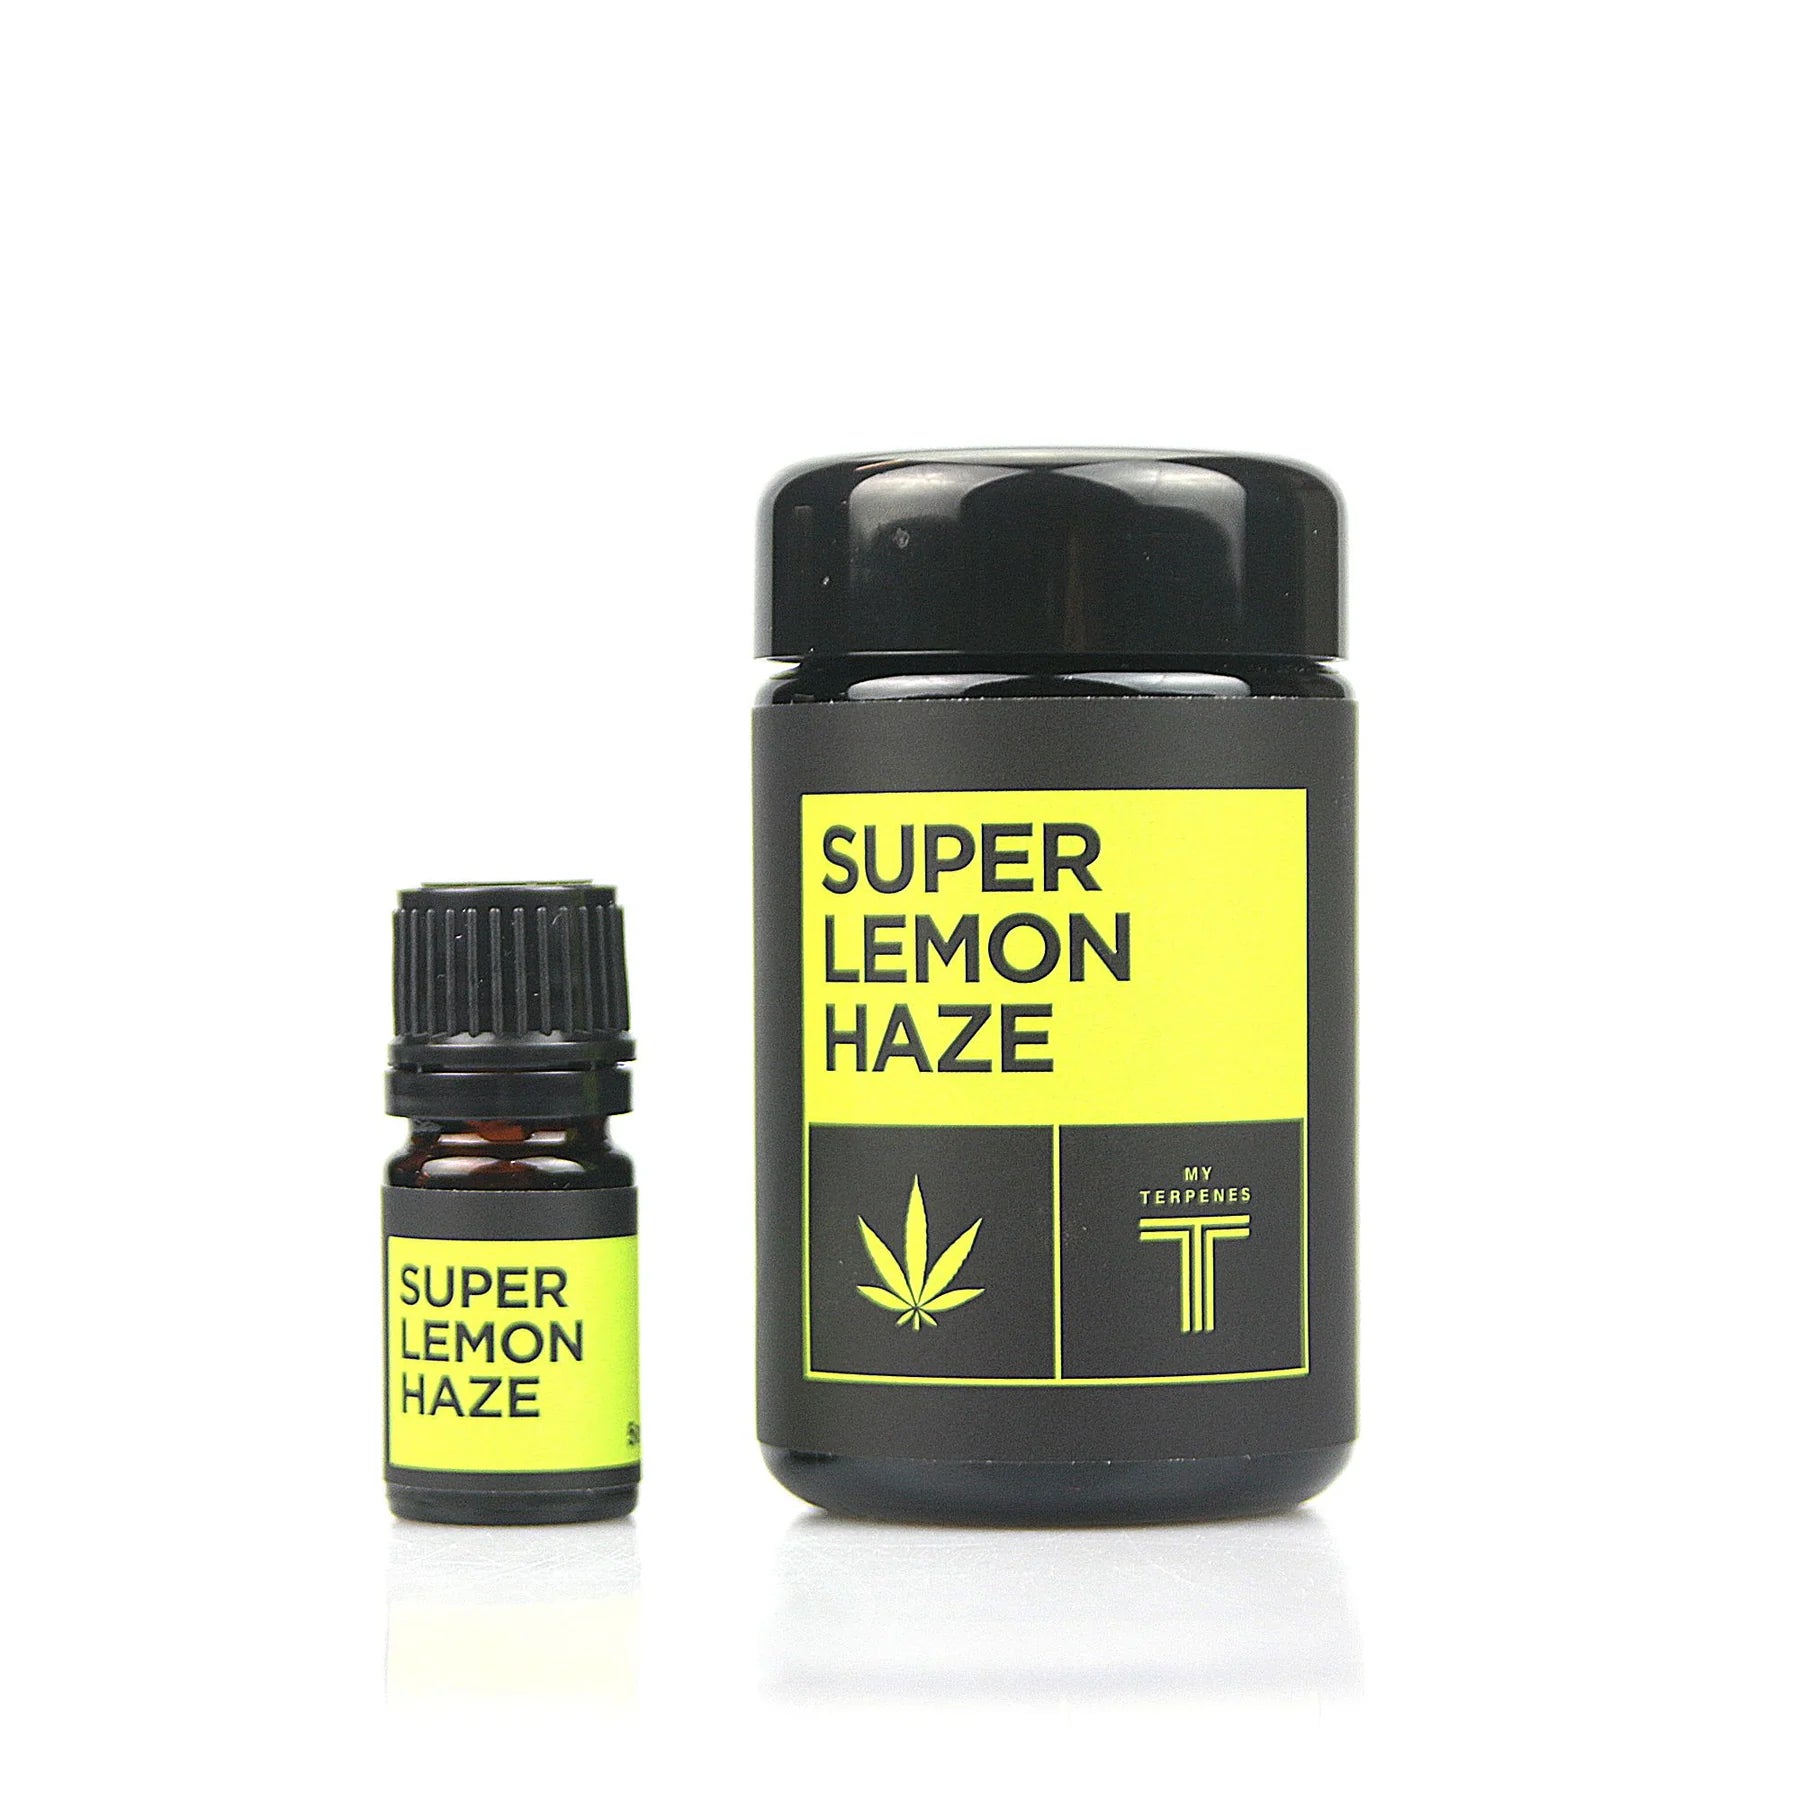 Buy Super Lemon Haze - Super Lemon Haze - Wick And Wire Co Melbourne Vape Shop, Victoria Australia